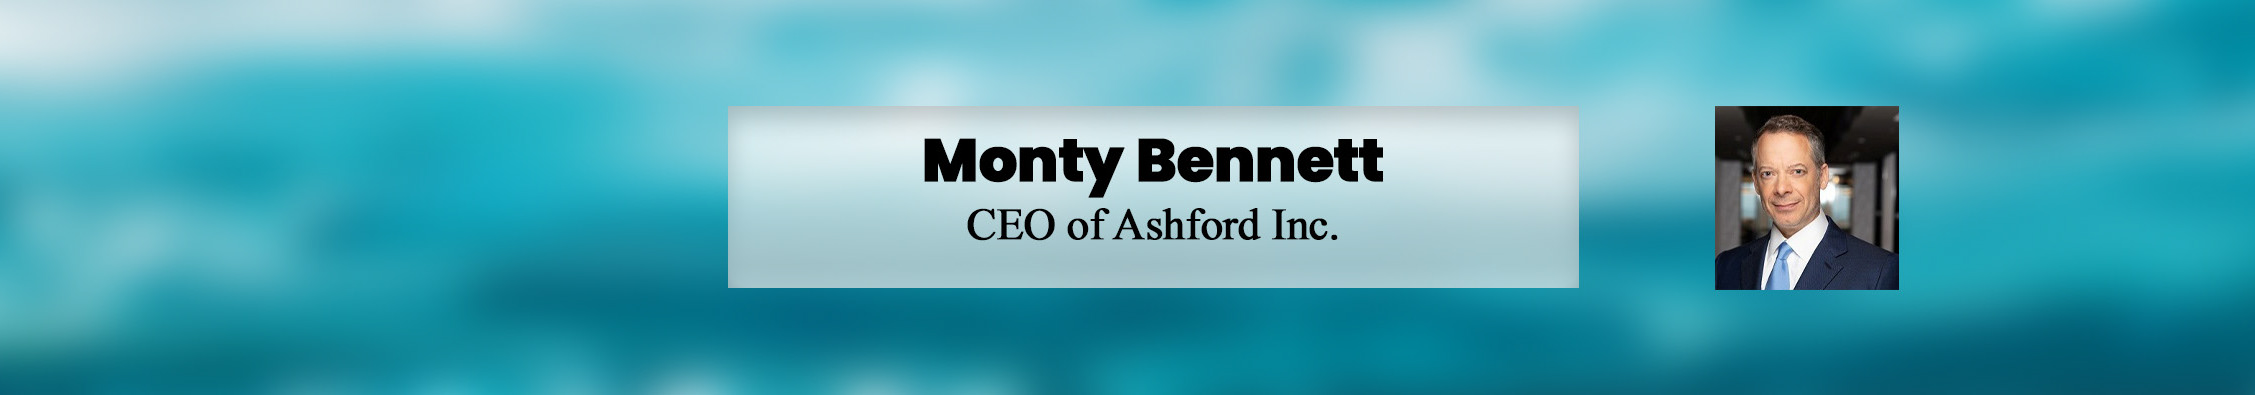 Monty Bennett's profile banner